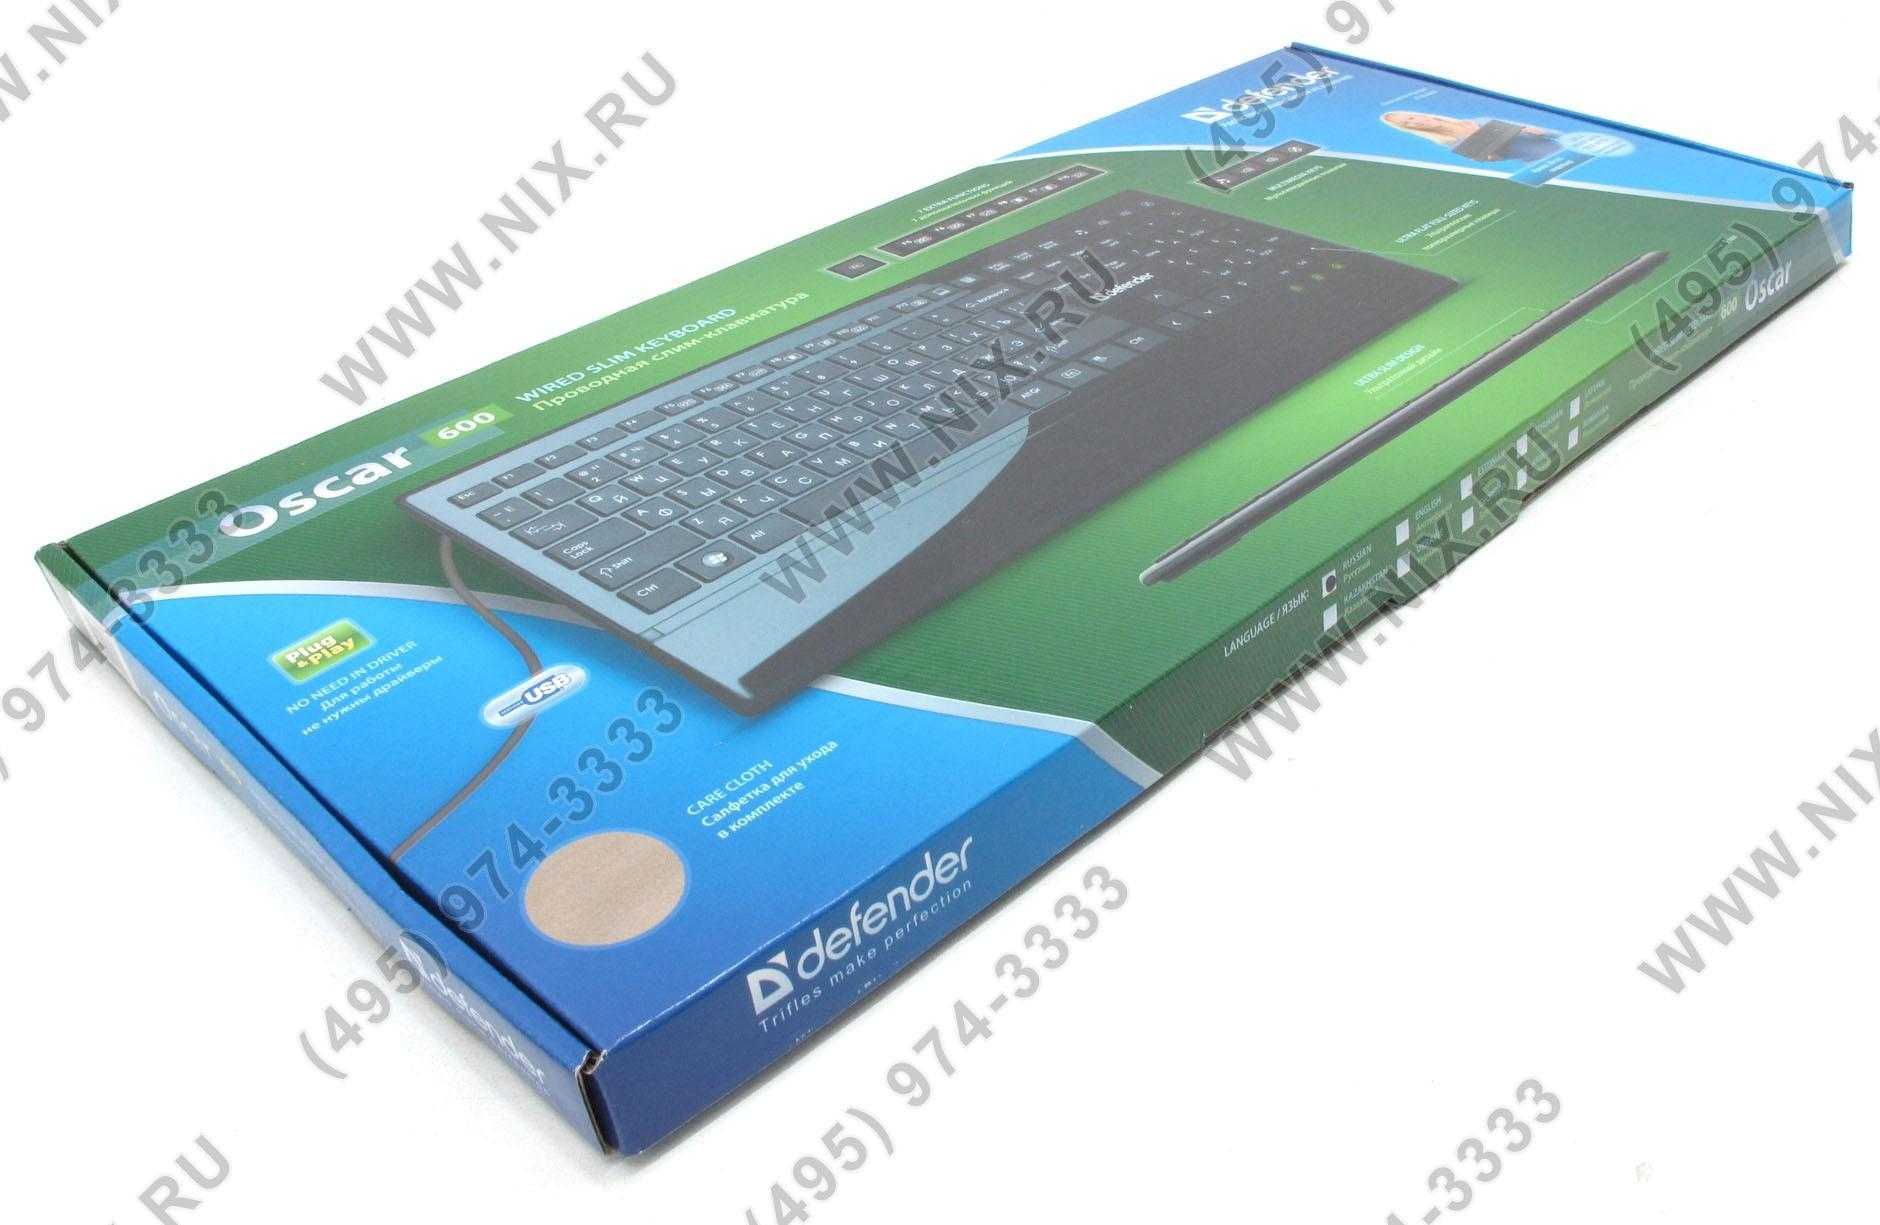 Клавиатура defender oscar 600 black usb (черный) (45602) купить от 670 руб в челябинске, сравнить цены, отзывы, видео обзоры и характеристики